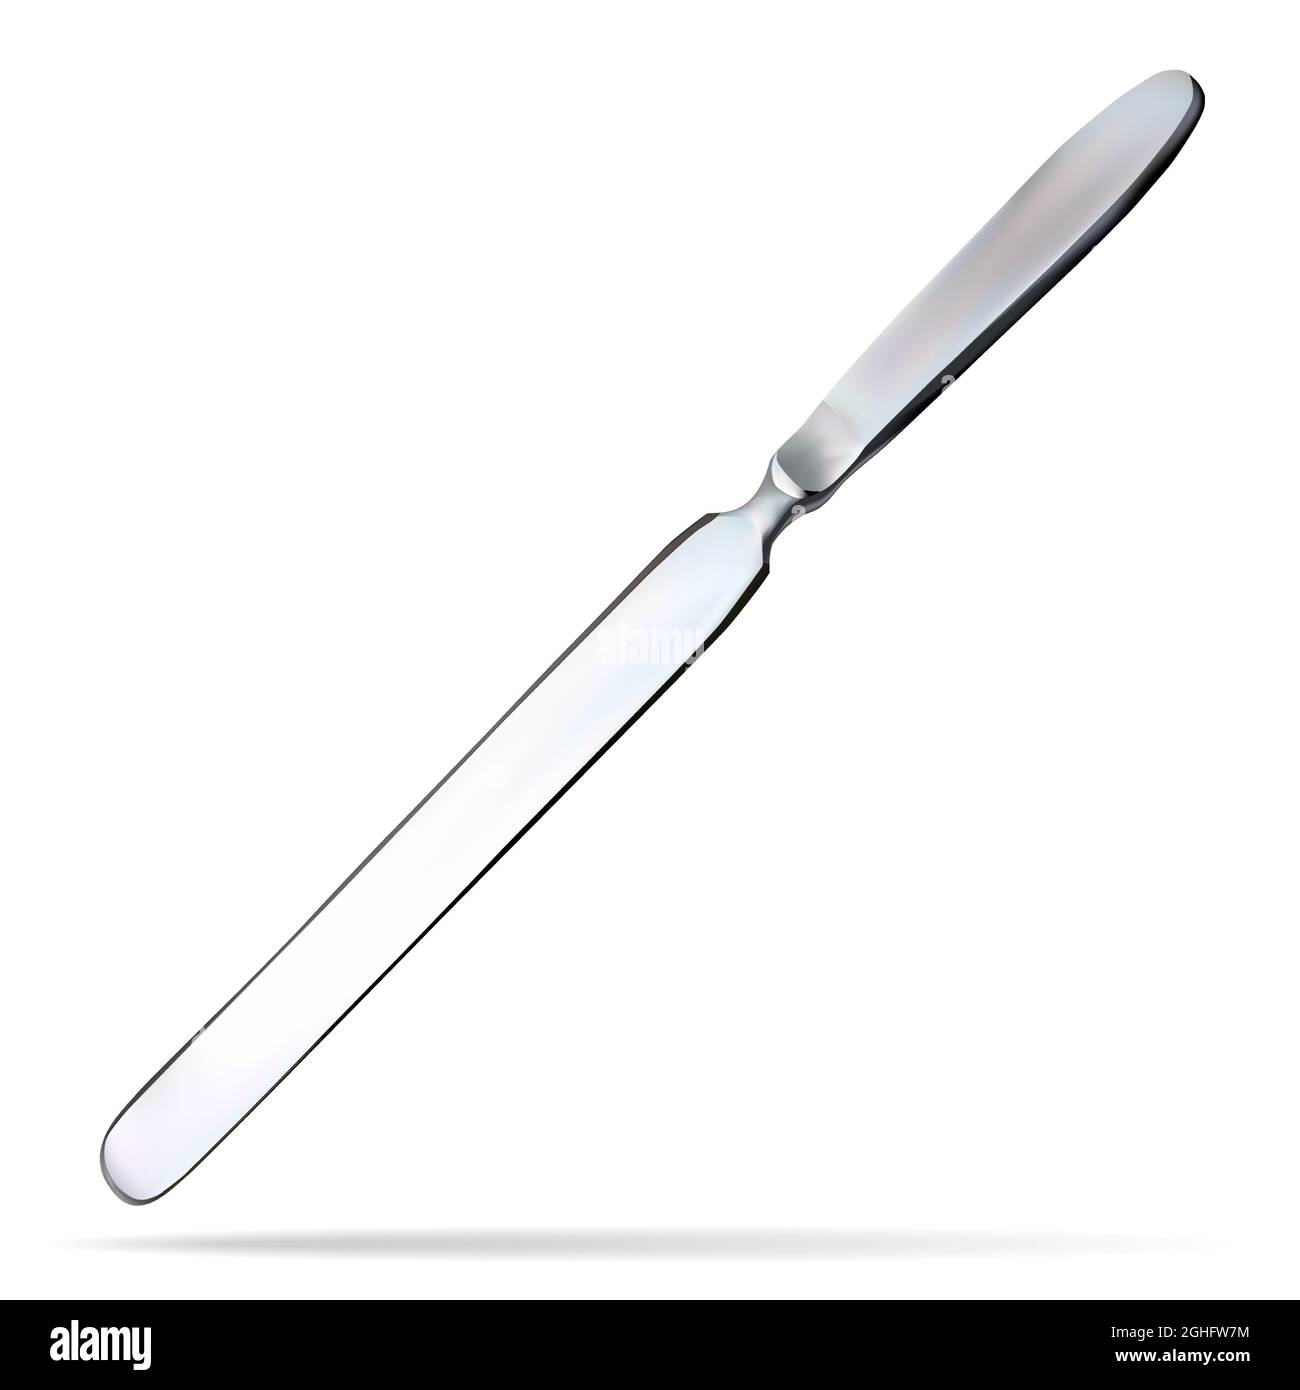 Hirnmesser. Zweischneidiges Messer mit einer langen, flachen, abgerundeten Klinge am Ende. Chirurgisches Instrument. Vektorgrafik Stock Vektor